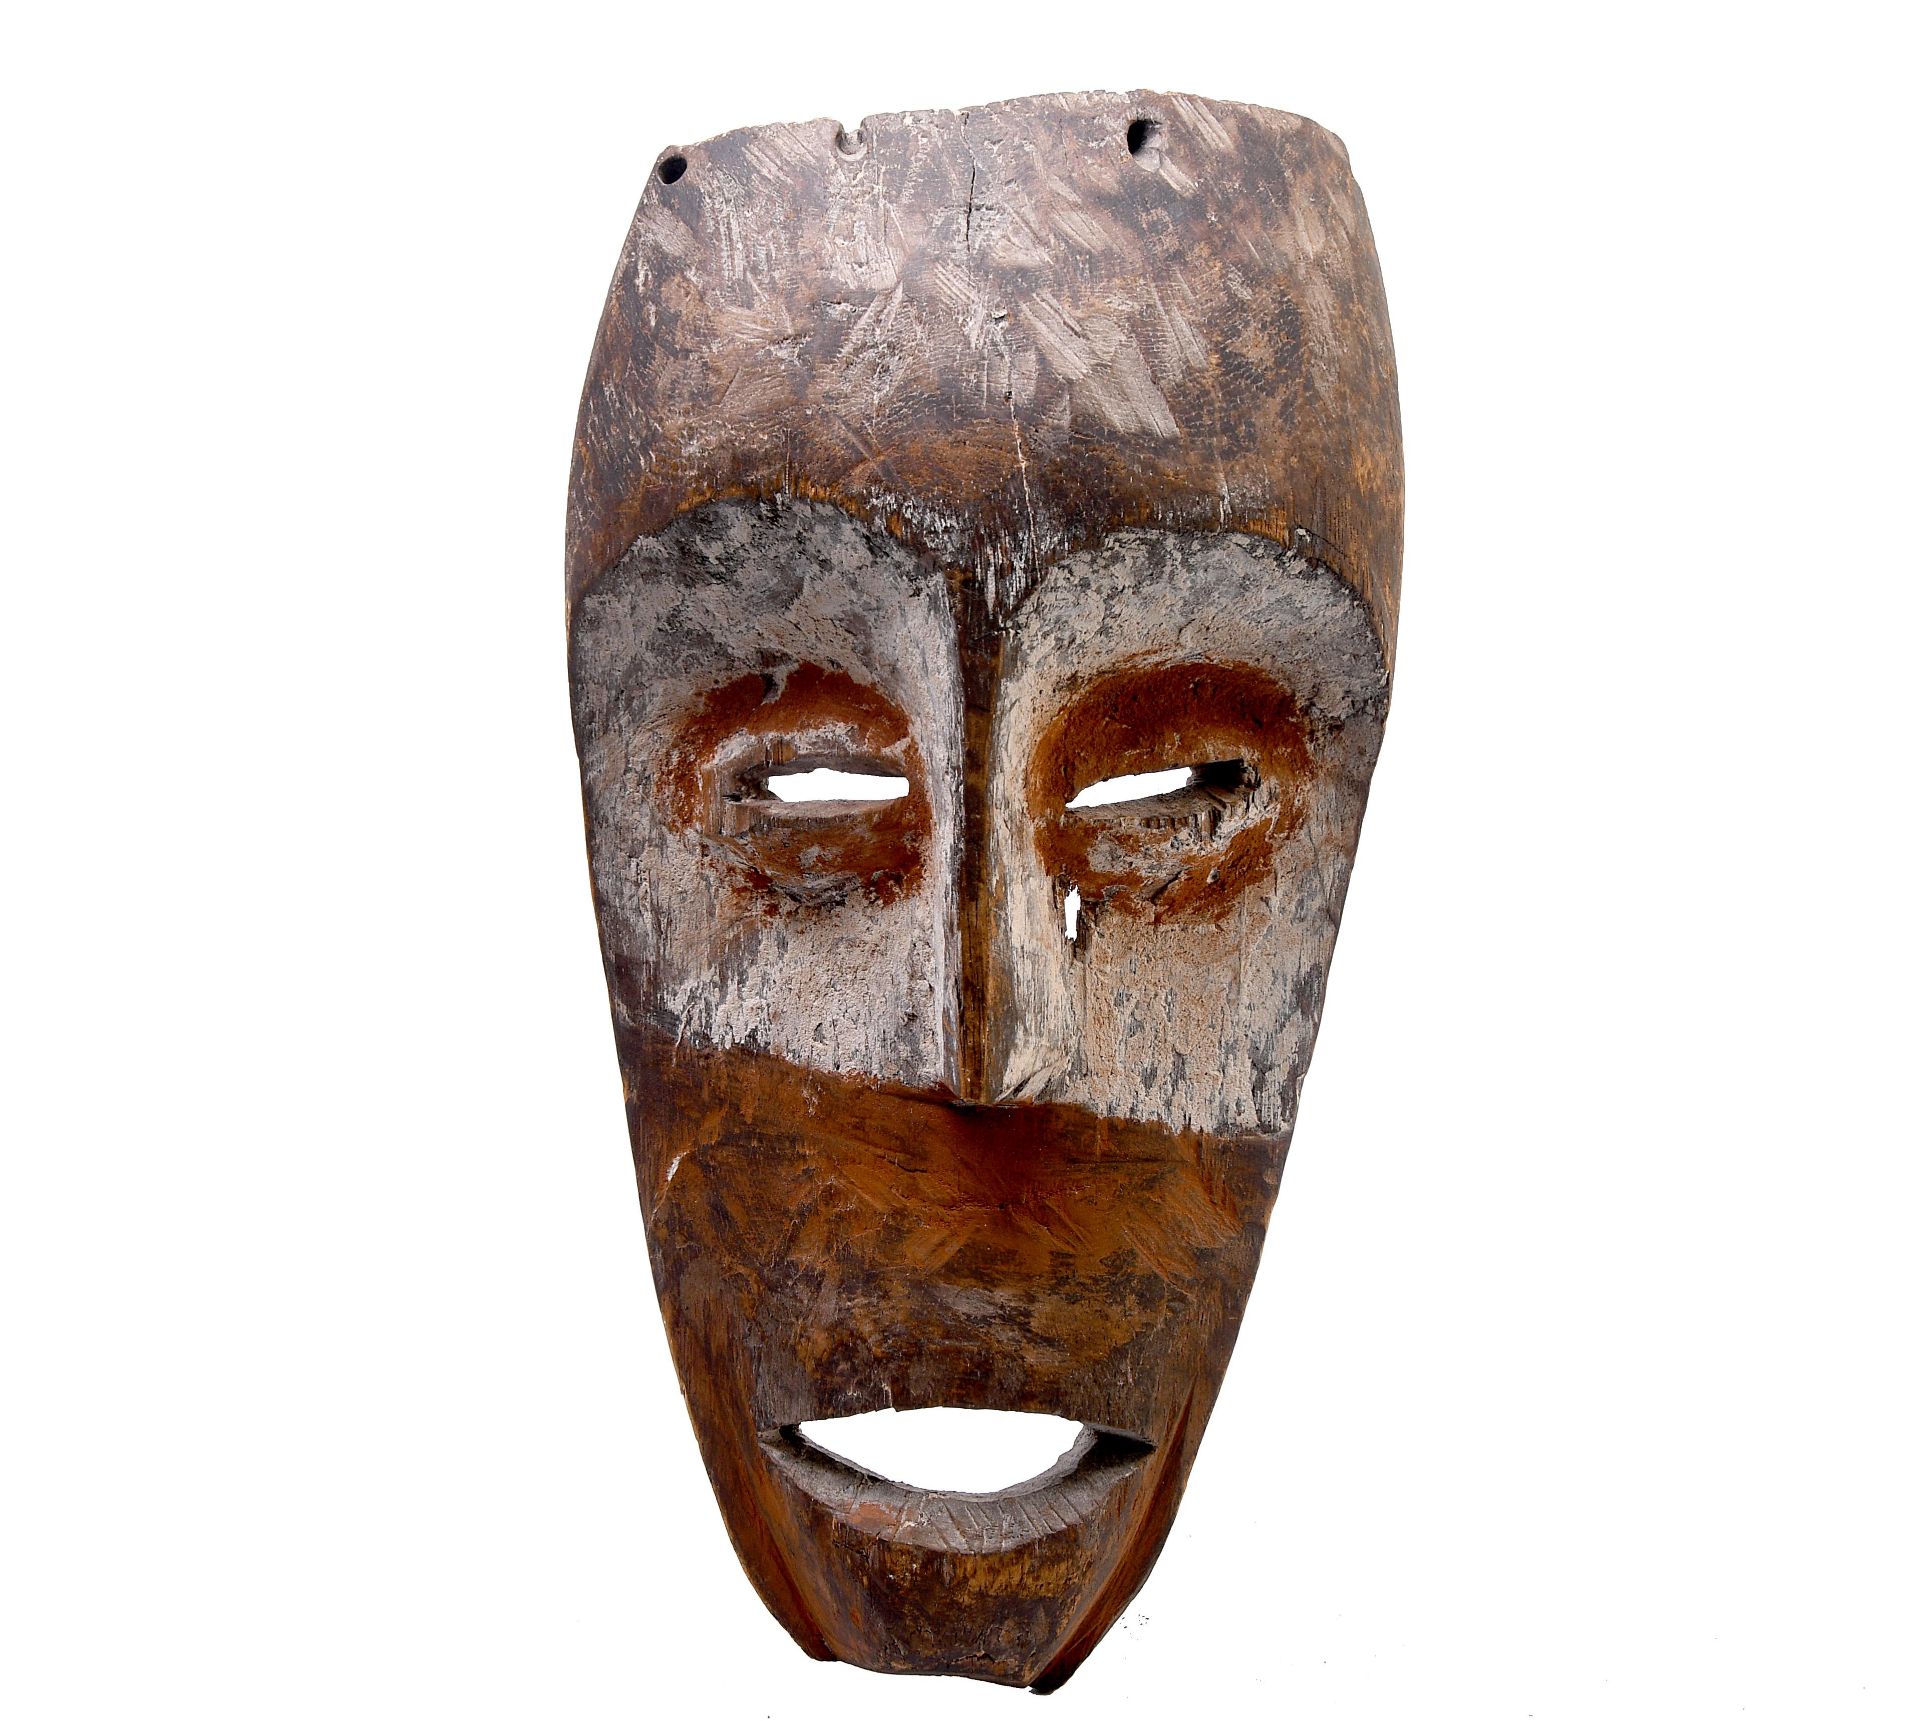 D.R. Congo, Shi, face mask,